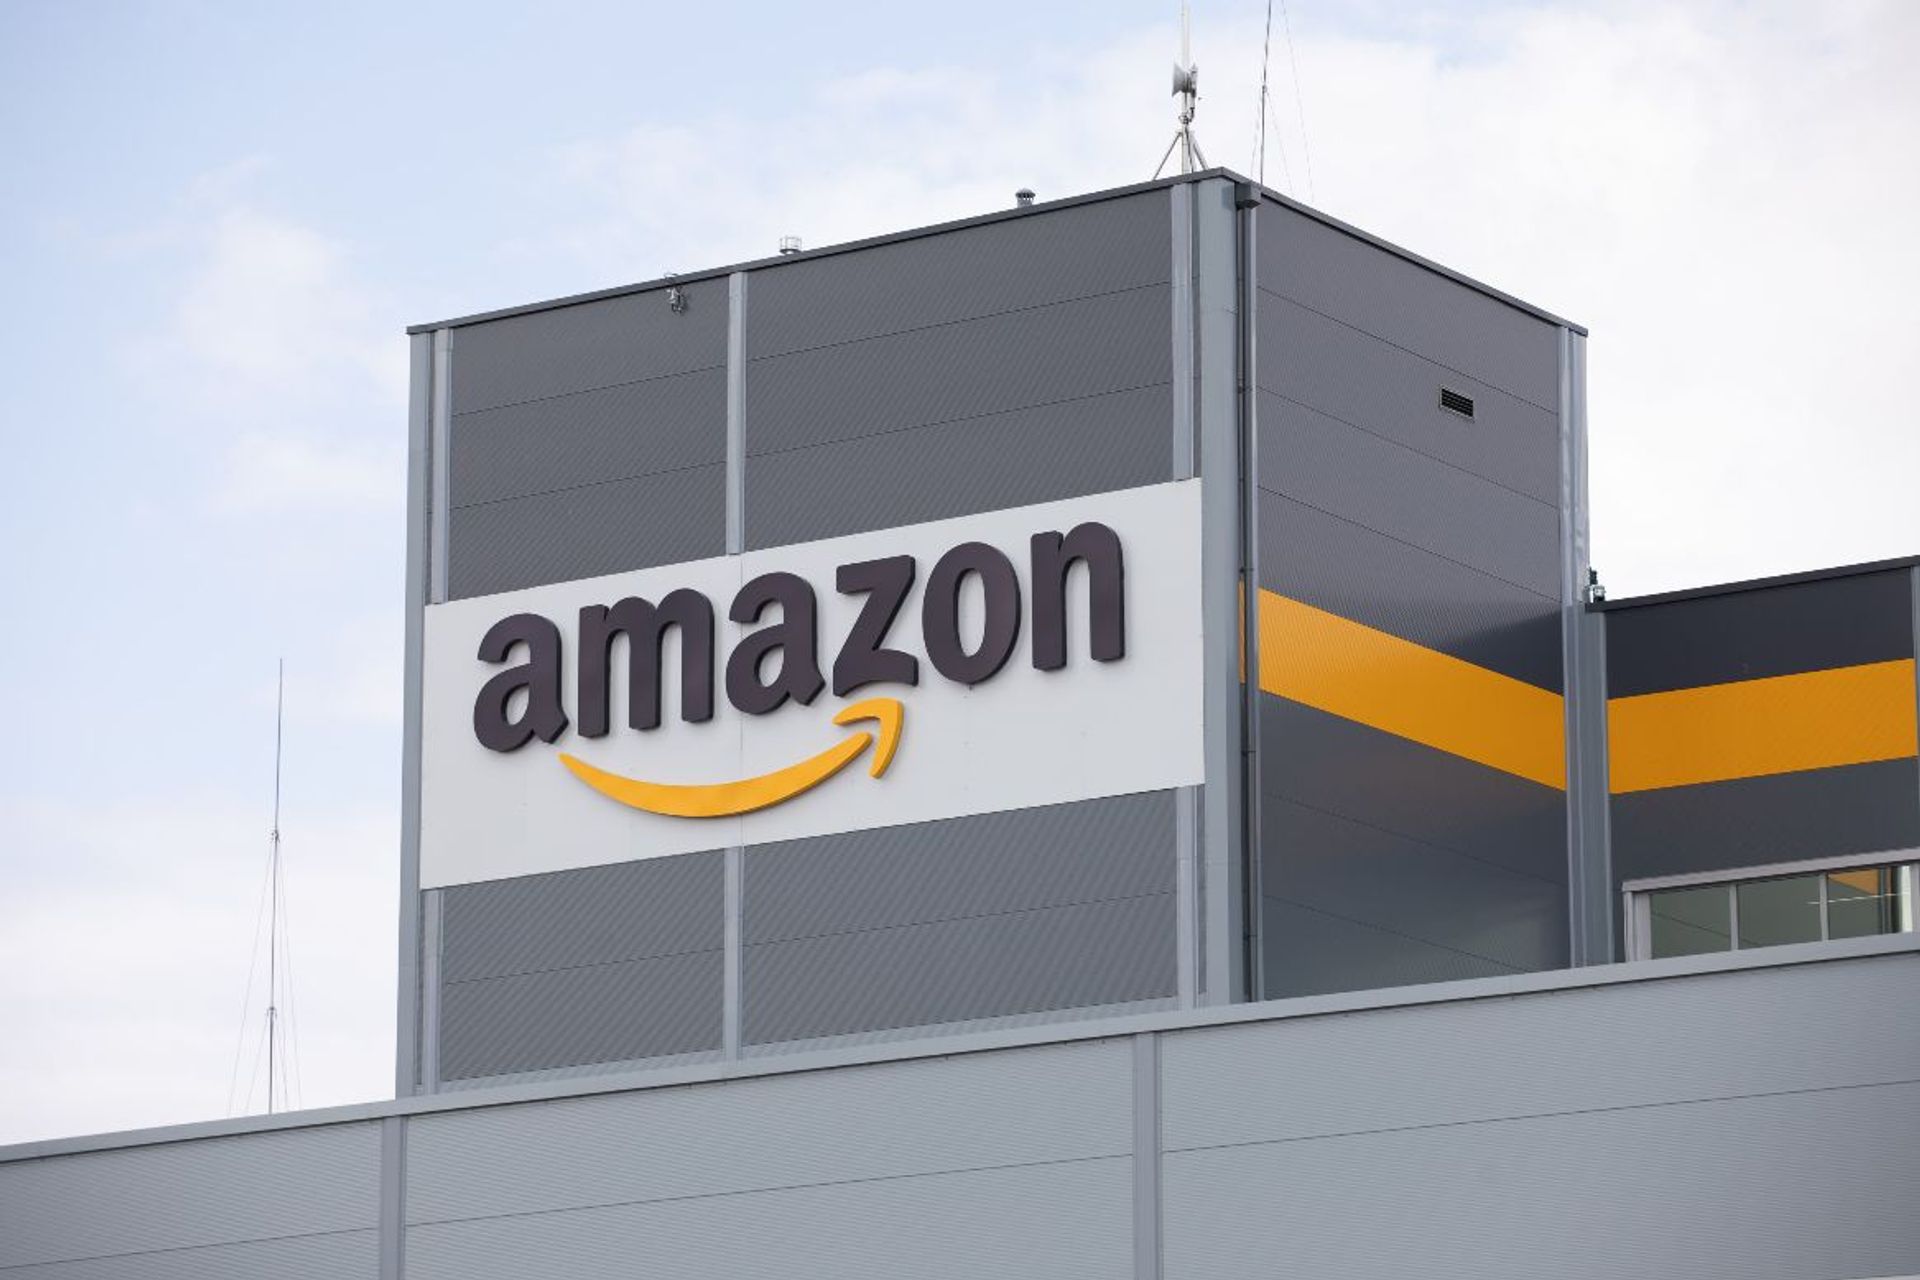 Amazon otworzył w Krakowie centrum rozwoju technologii  